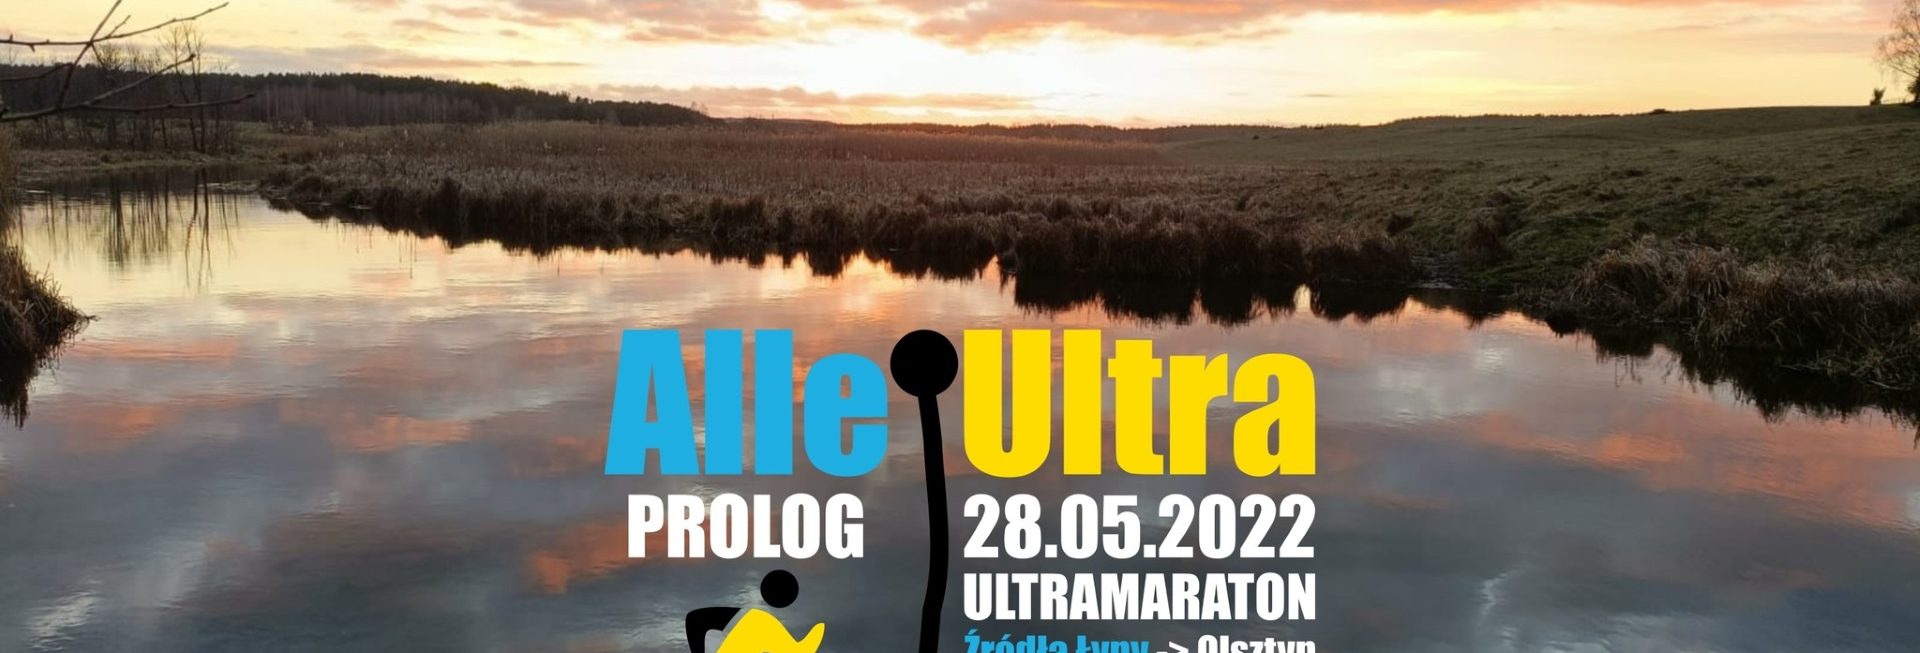 Plakat graficzny zapraszający do Olsztyna na zawody ultramaratonu biegowego AlleUltra 50 - Źródła Łyny Olsztyn 2022.